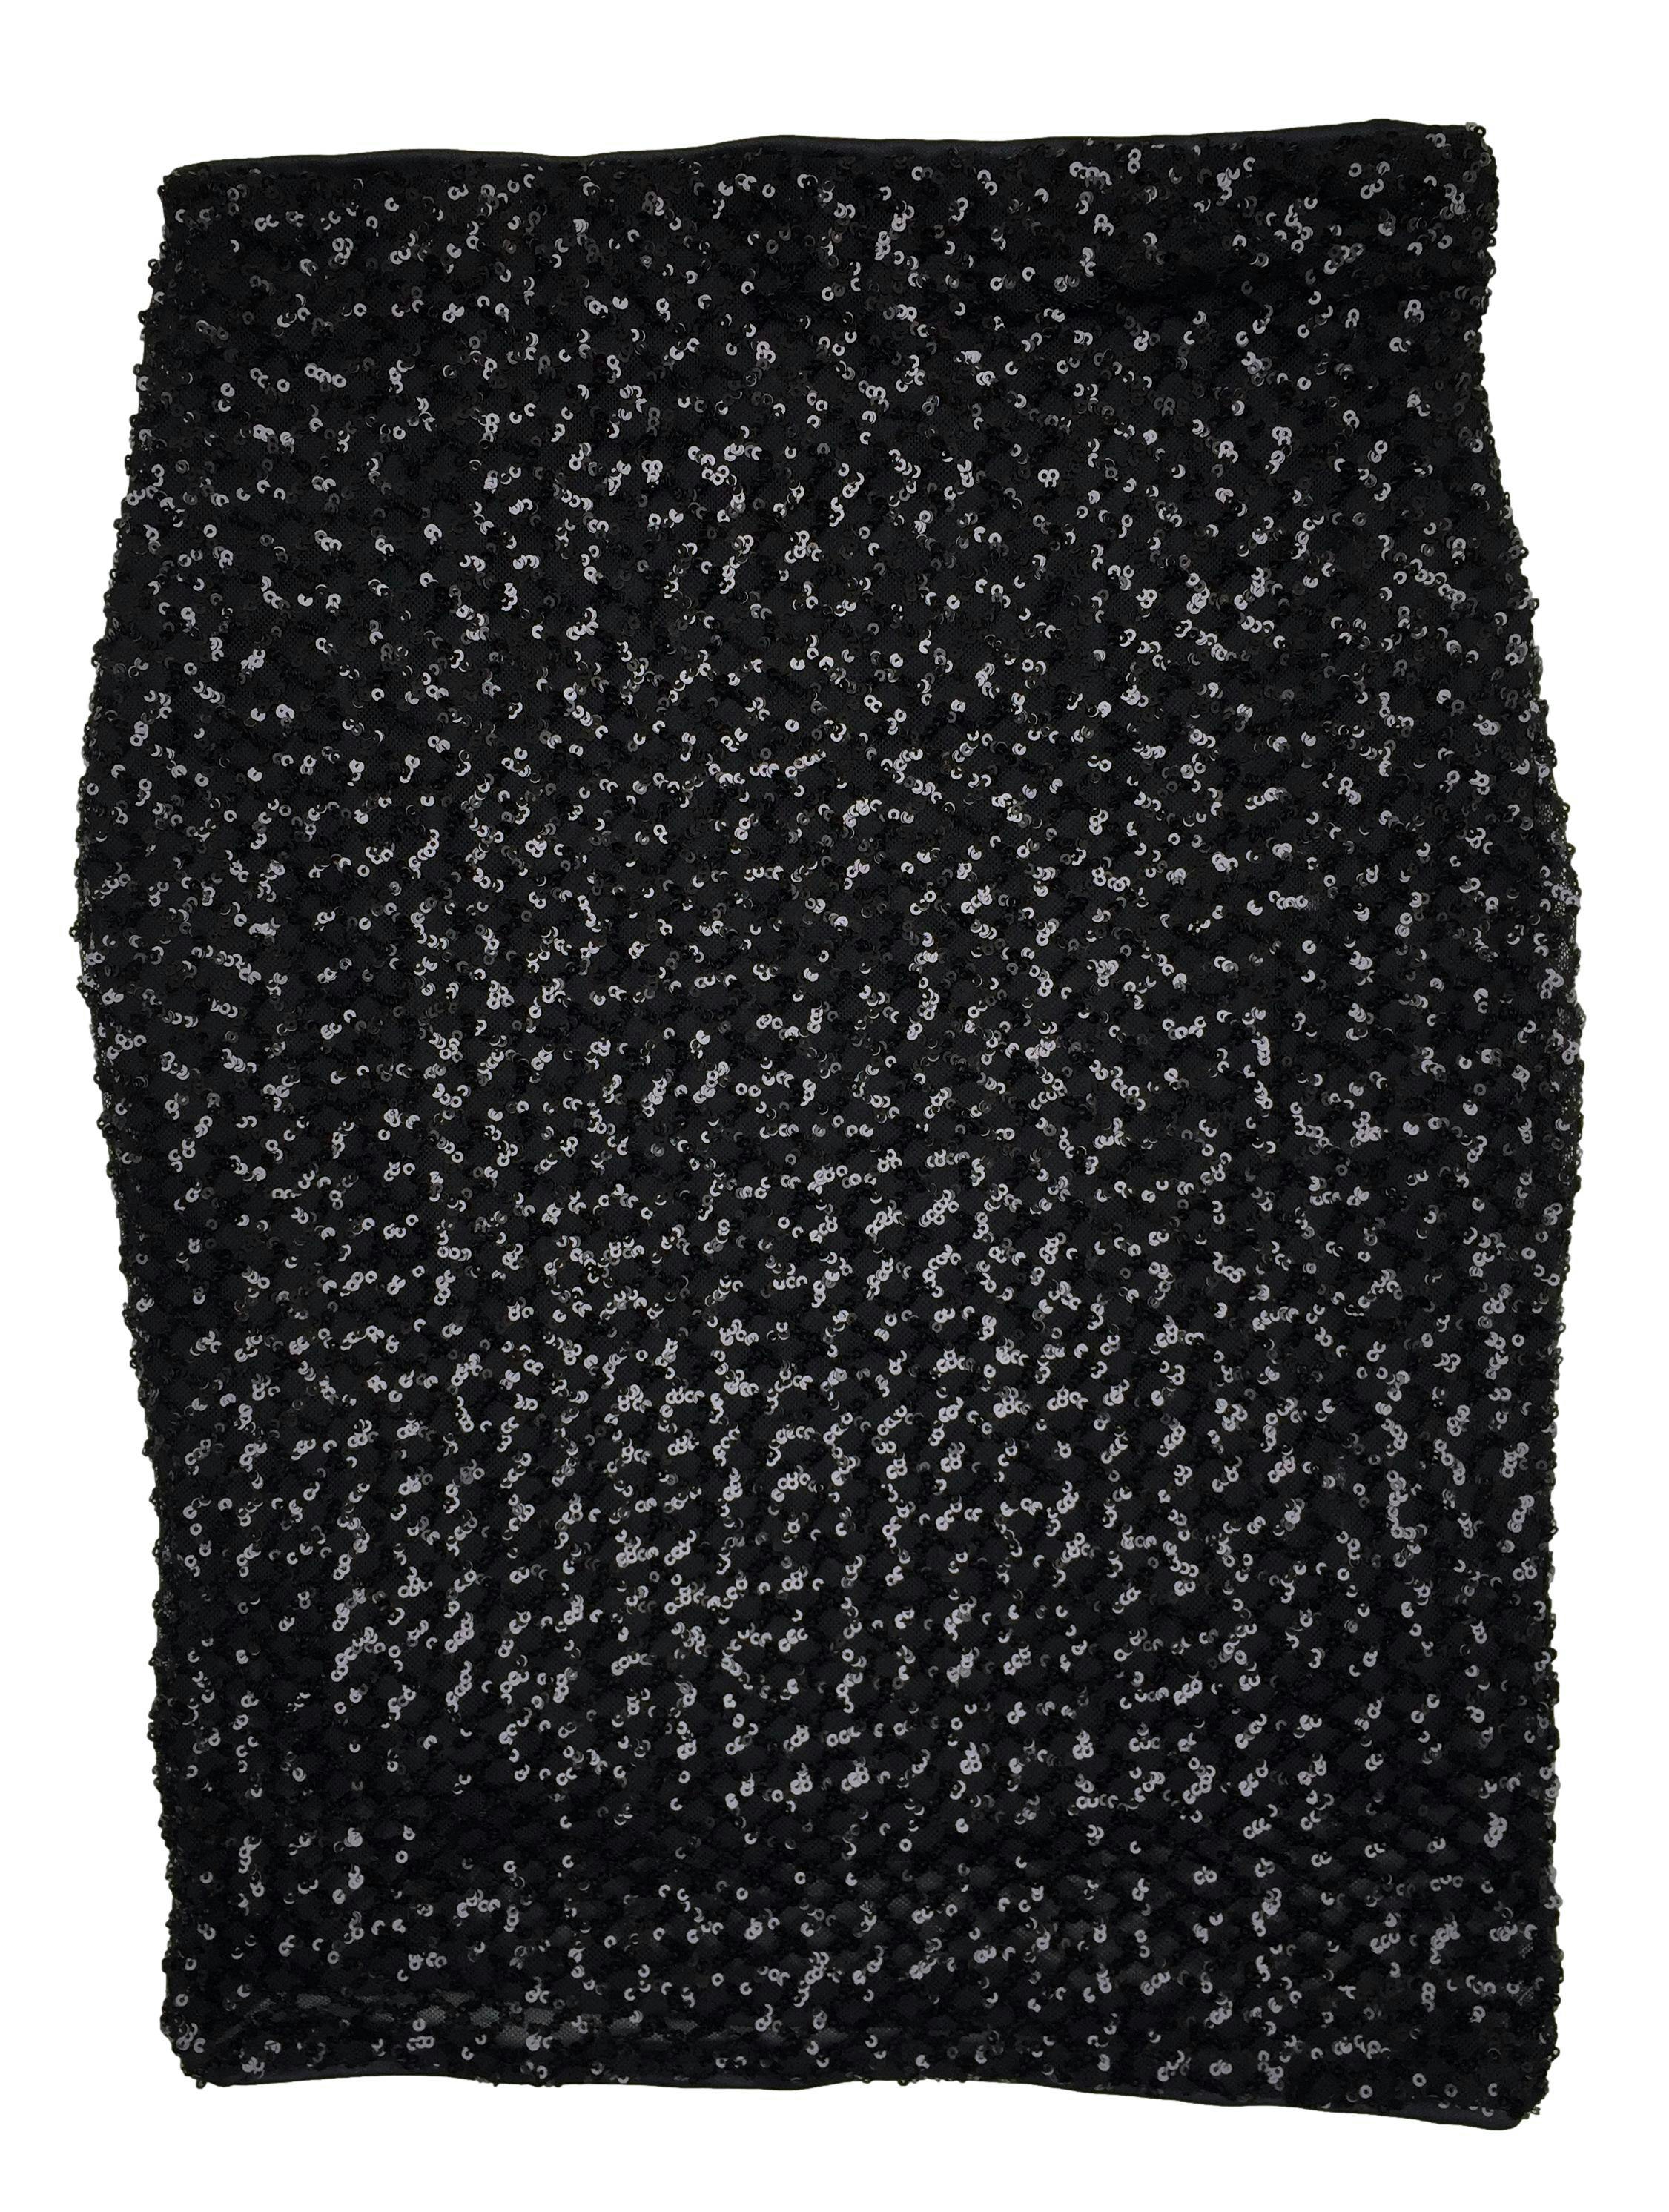 Falda Haute monde de mesh con aplicaciones de lentejuelas, forro interior, cintura elástica. Cintura 64cm, Largo 50cm